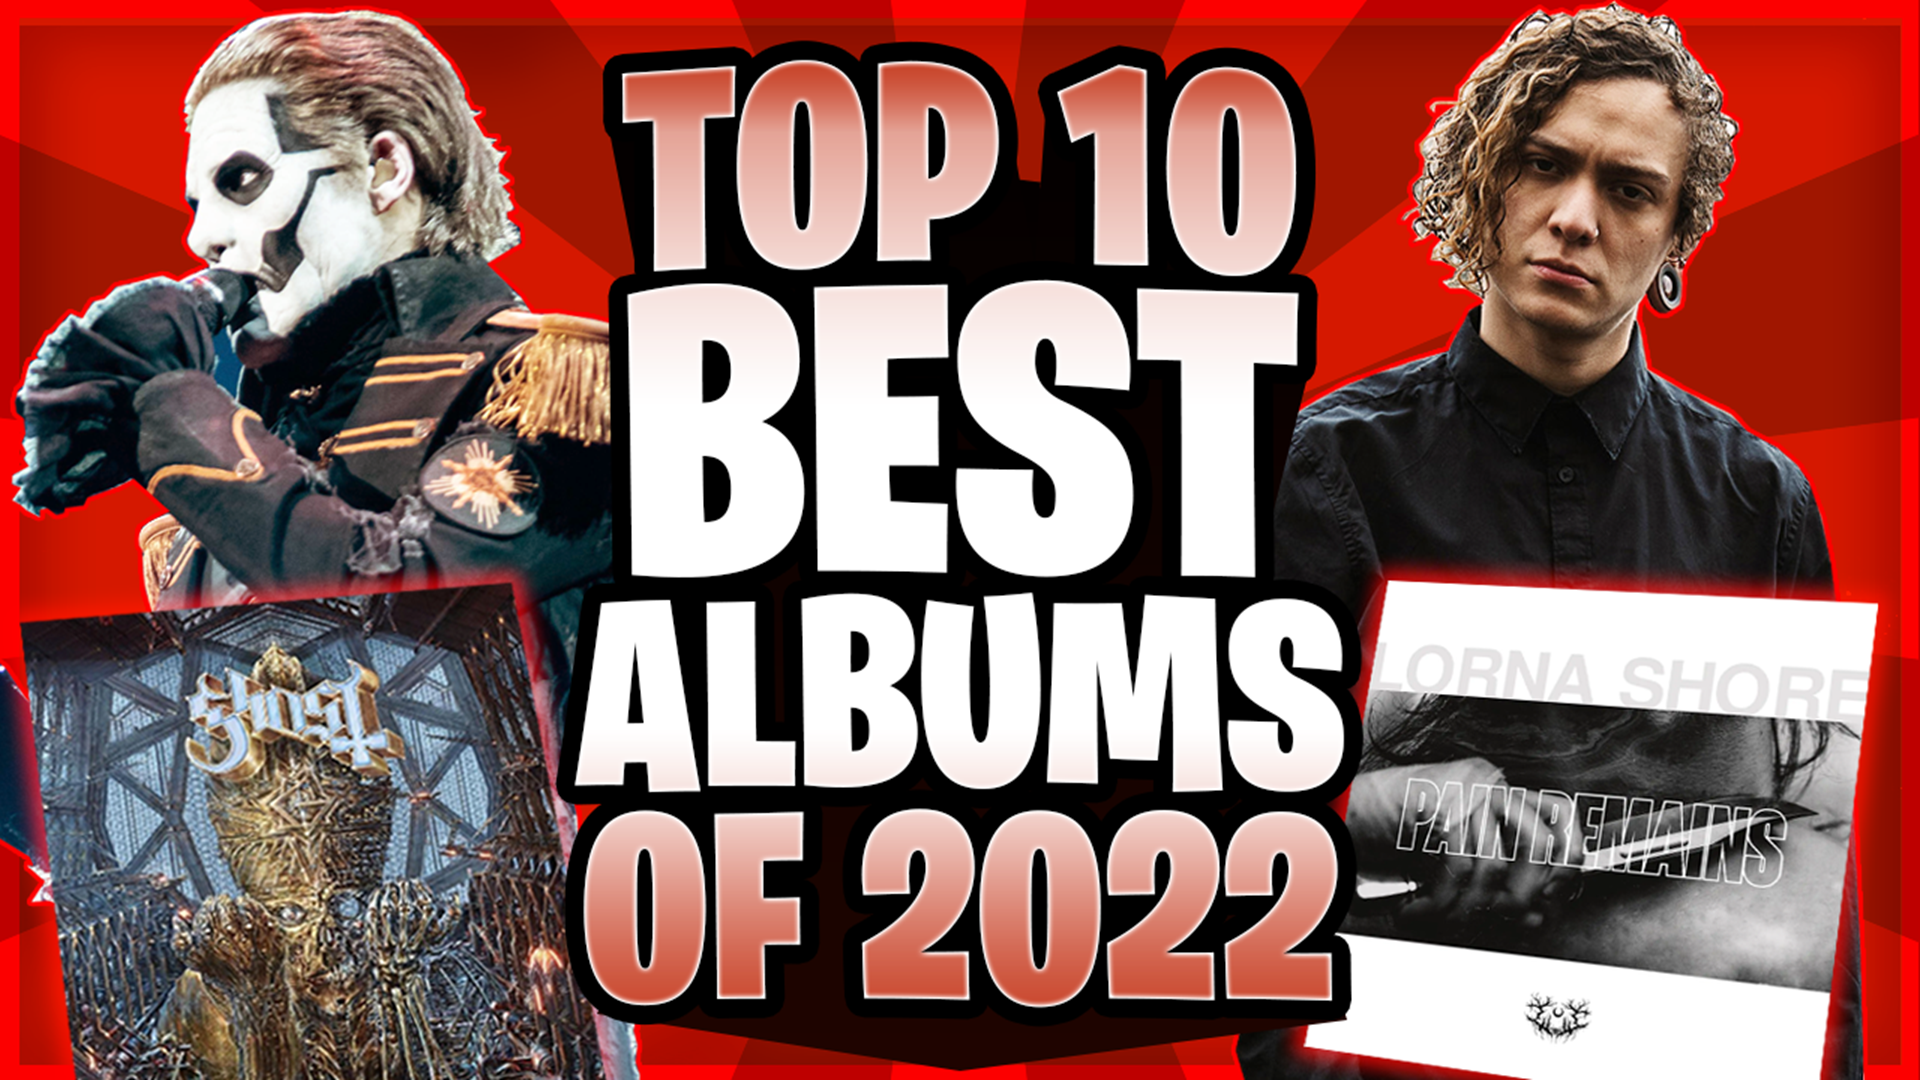 Top 10 BEST Albums Of 2022